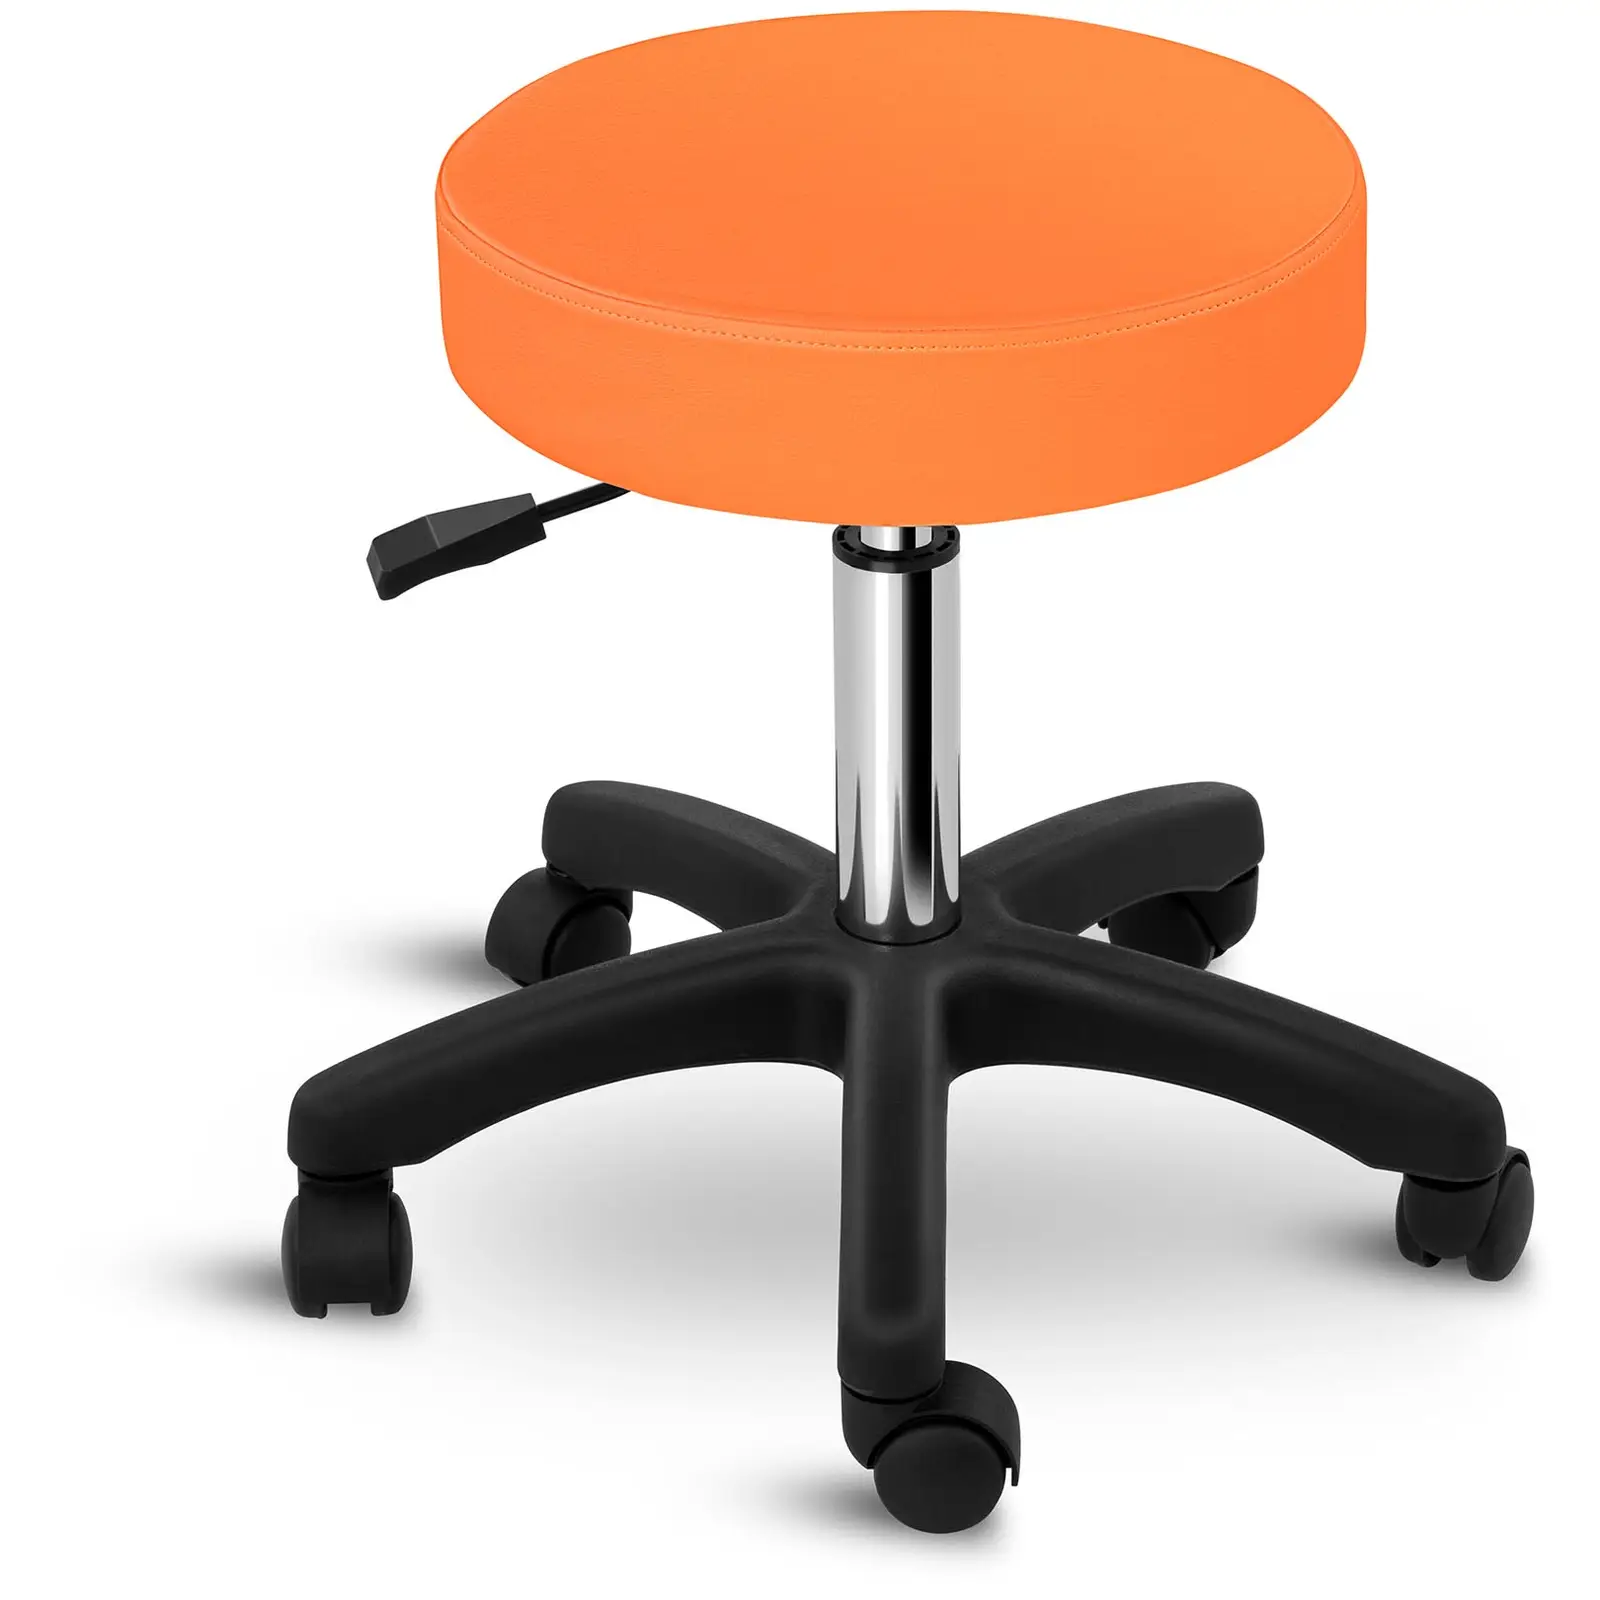 Delovni stolček - 450-580 mm - 150 kg - oranžen